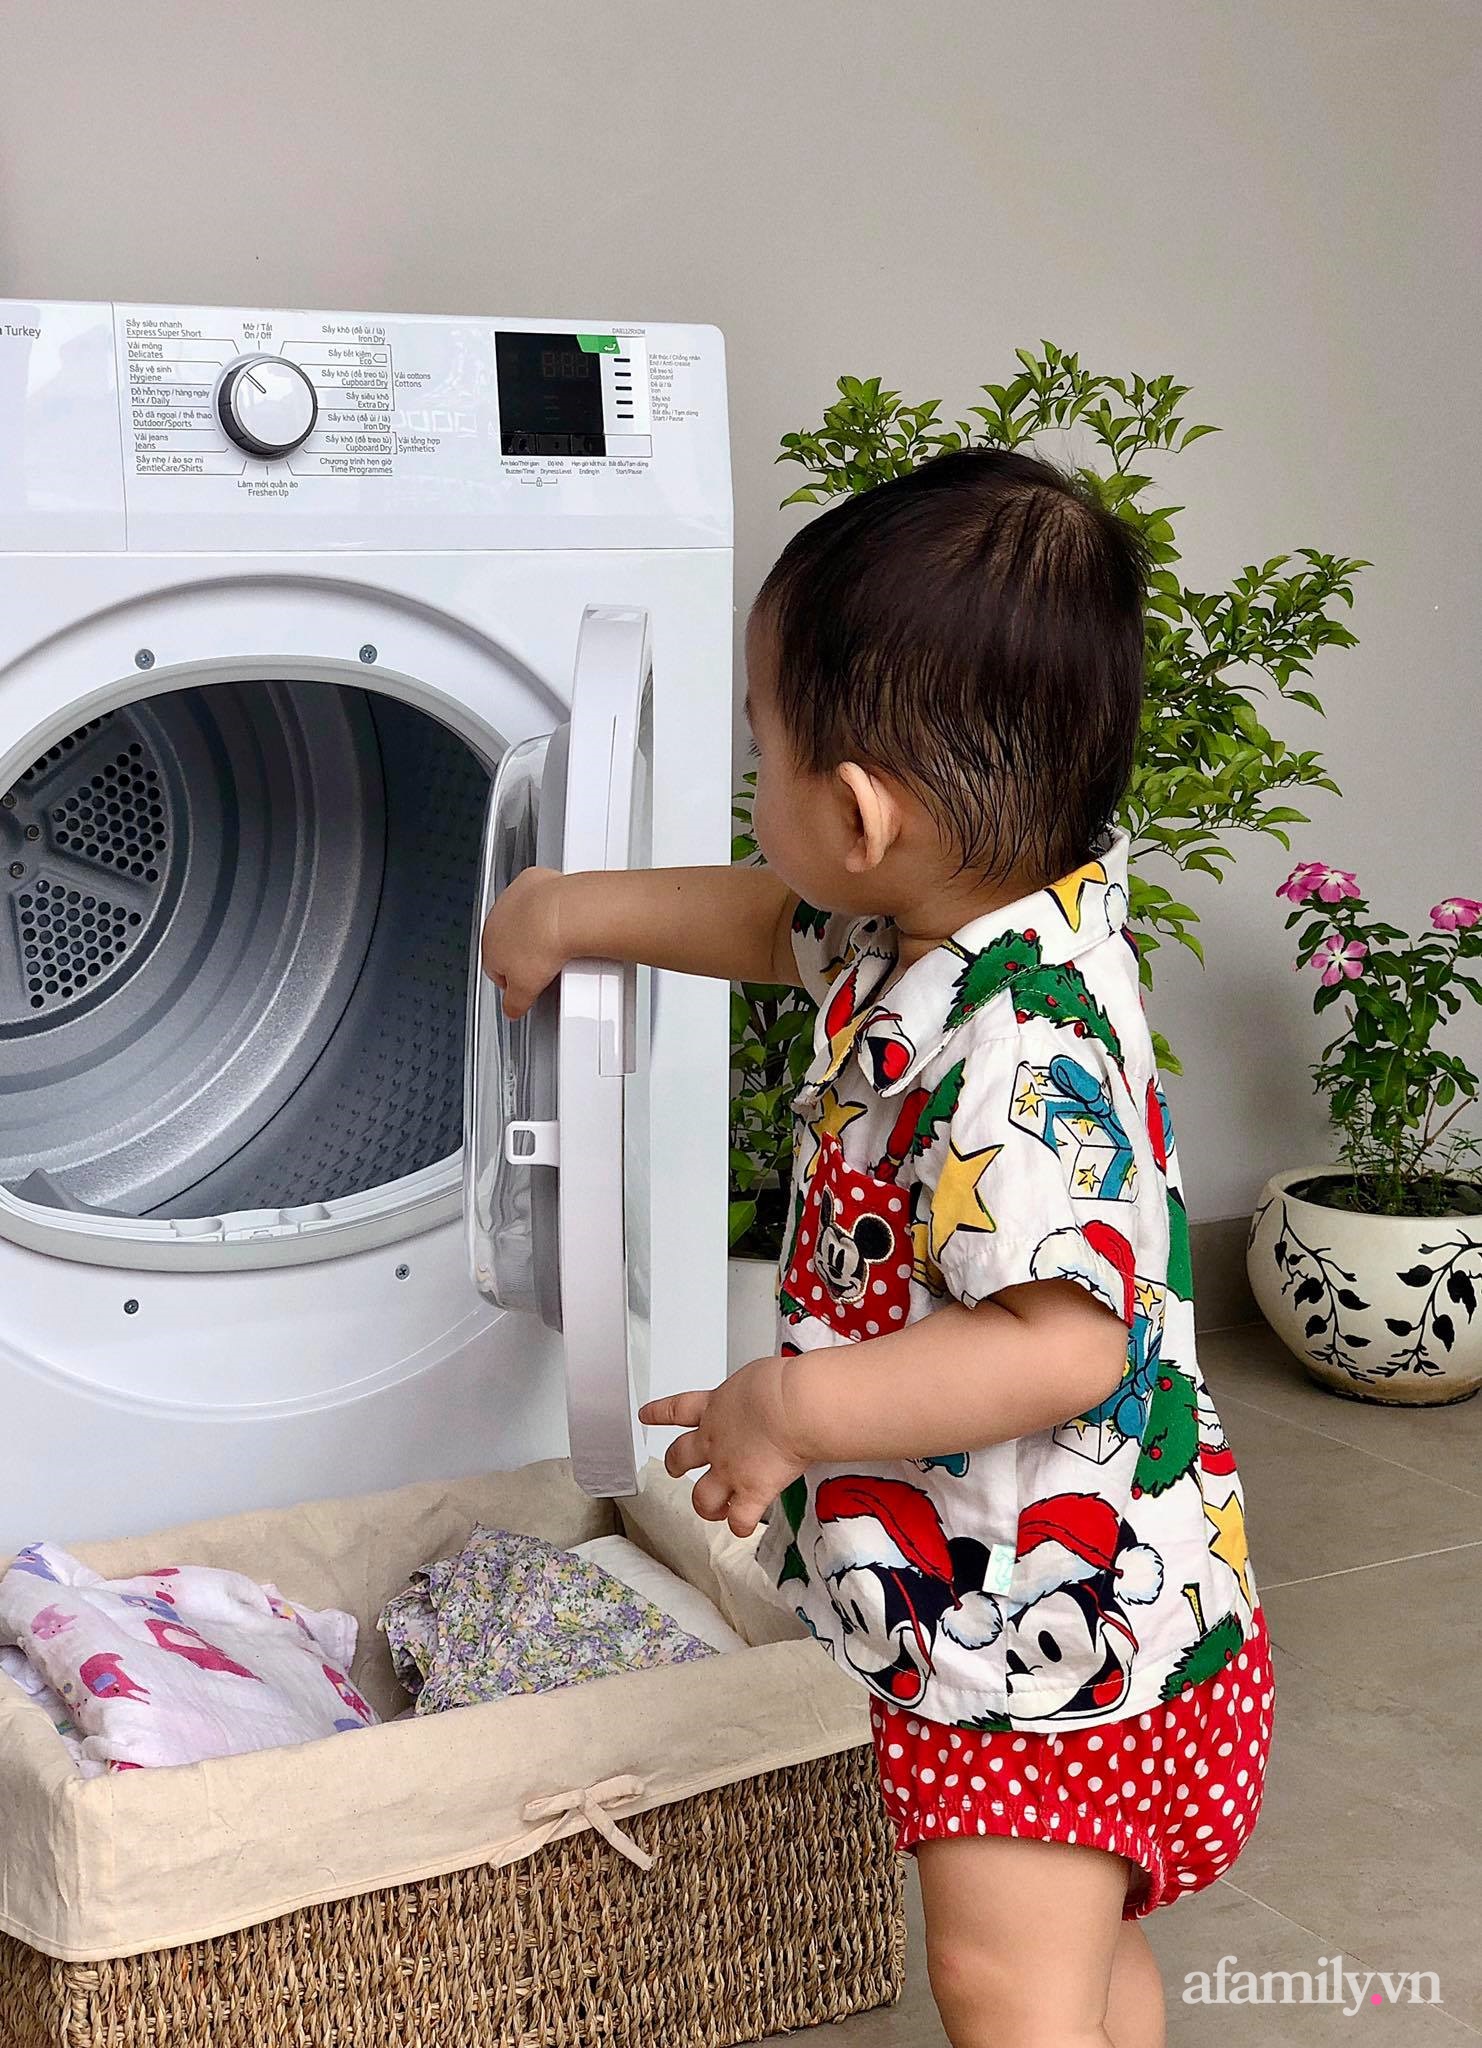 Sống ở Sài Gòn bụi bặm, mẹ trẻ review nhanh chiếc máy sấy quần áo ngưng tụ được khẳng định "nên sắm" của những gia đình có con nhỏ - Ảnh 5.